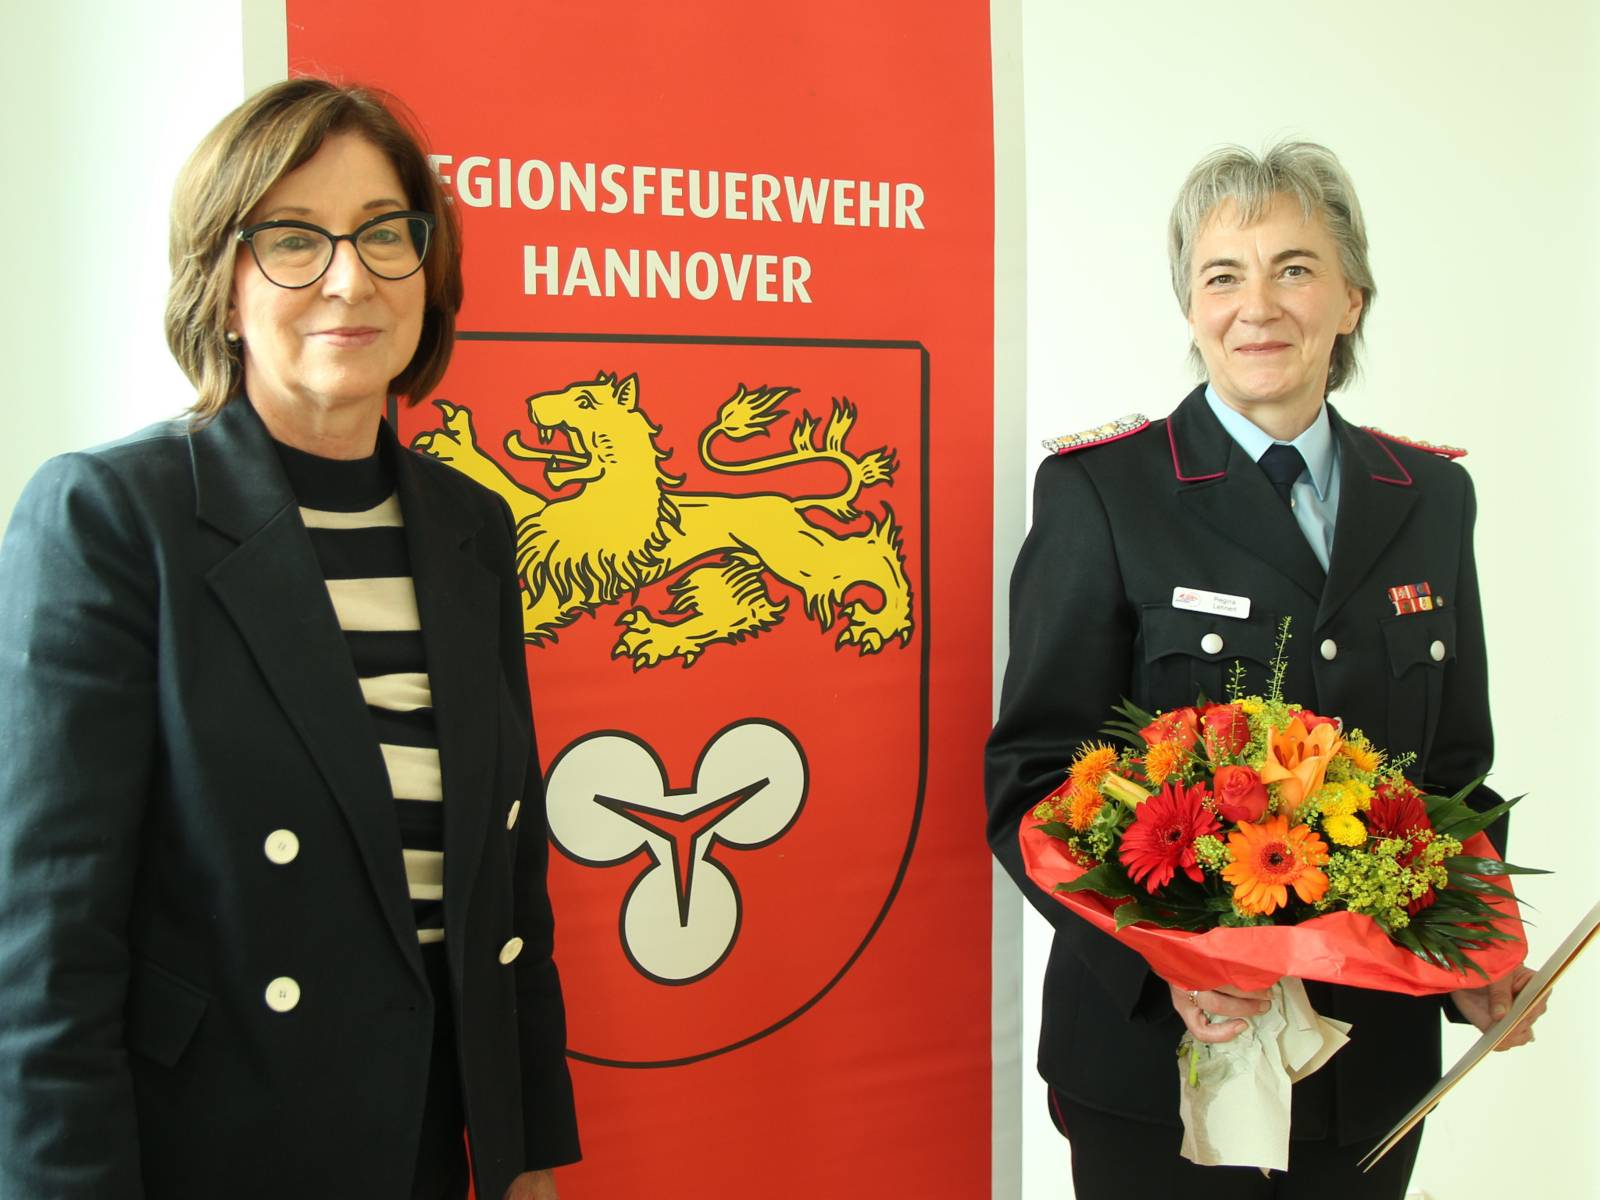 Zwei Damen vor einem großen Banner auf dem Regionsfeuerwehr Hannover steht. Eine der Damen hält einen Blumenstrauß in den Händen